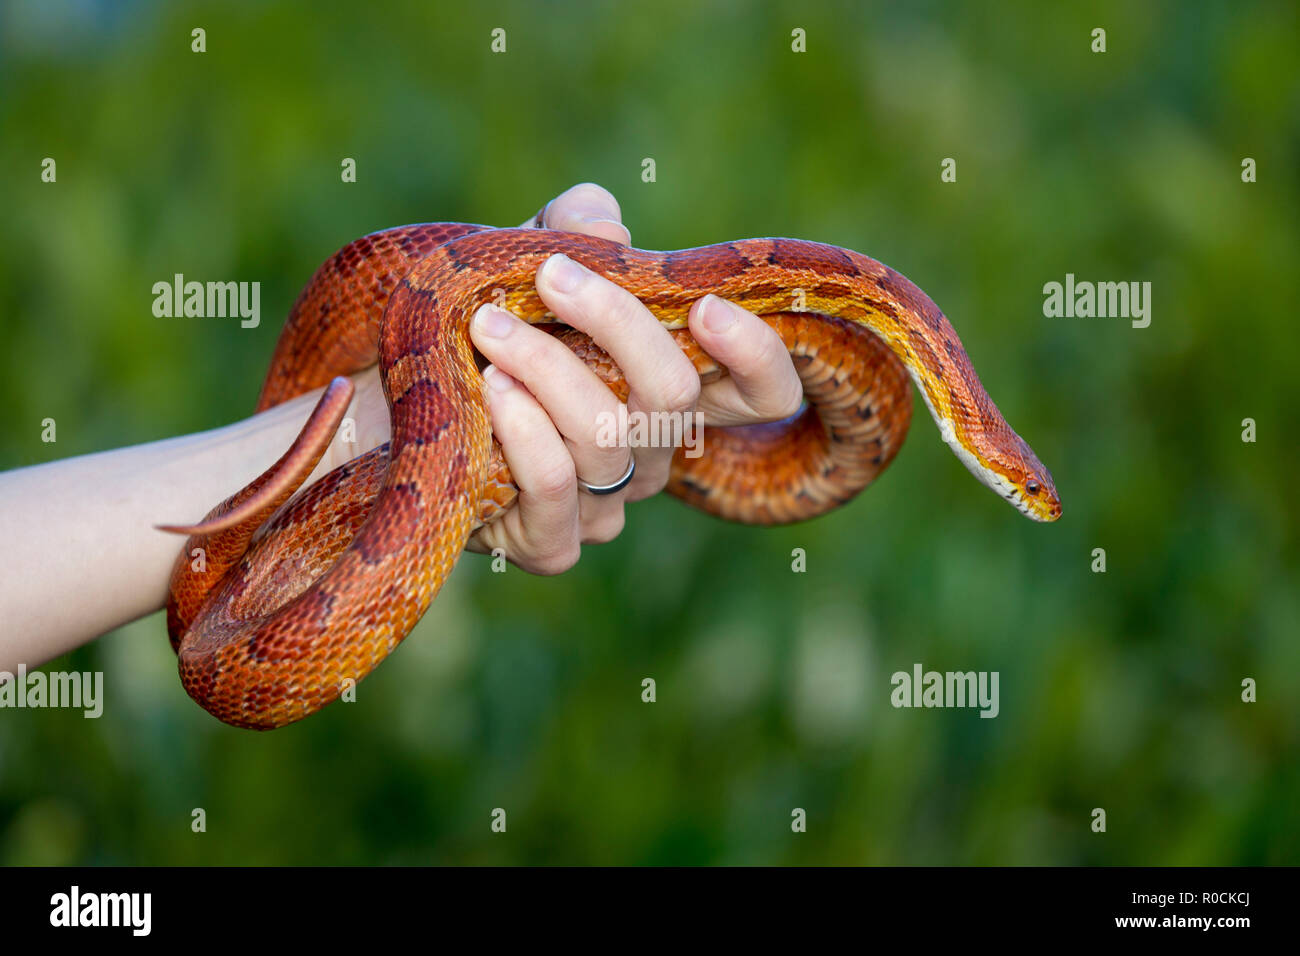 Maíz serpiente enrollada alrededor de propietarios mano contra fondo verde Foto de stock